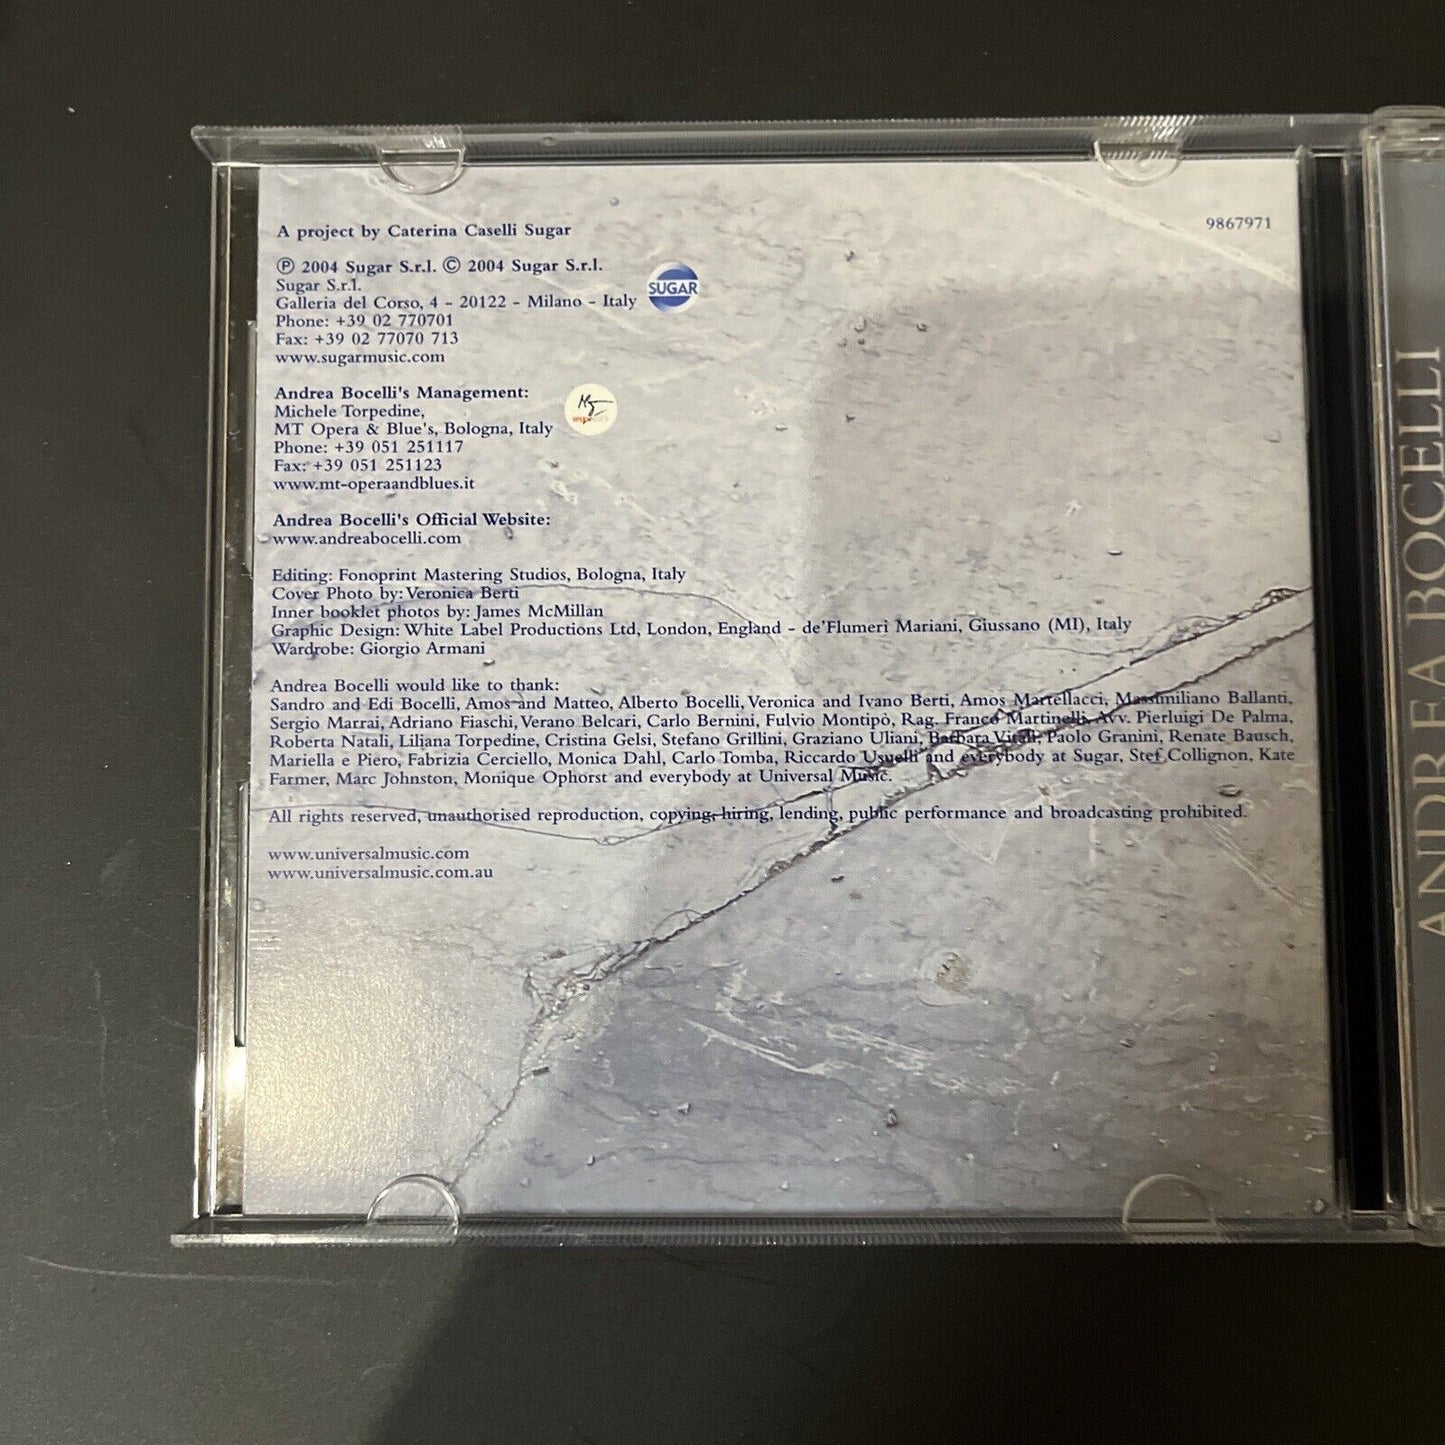 Andrea Bocelli - Andrea (CD, 2004)